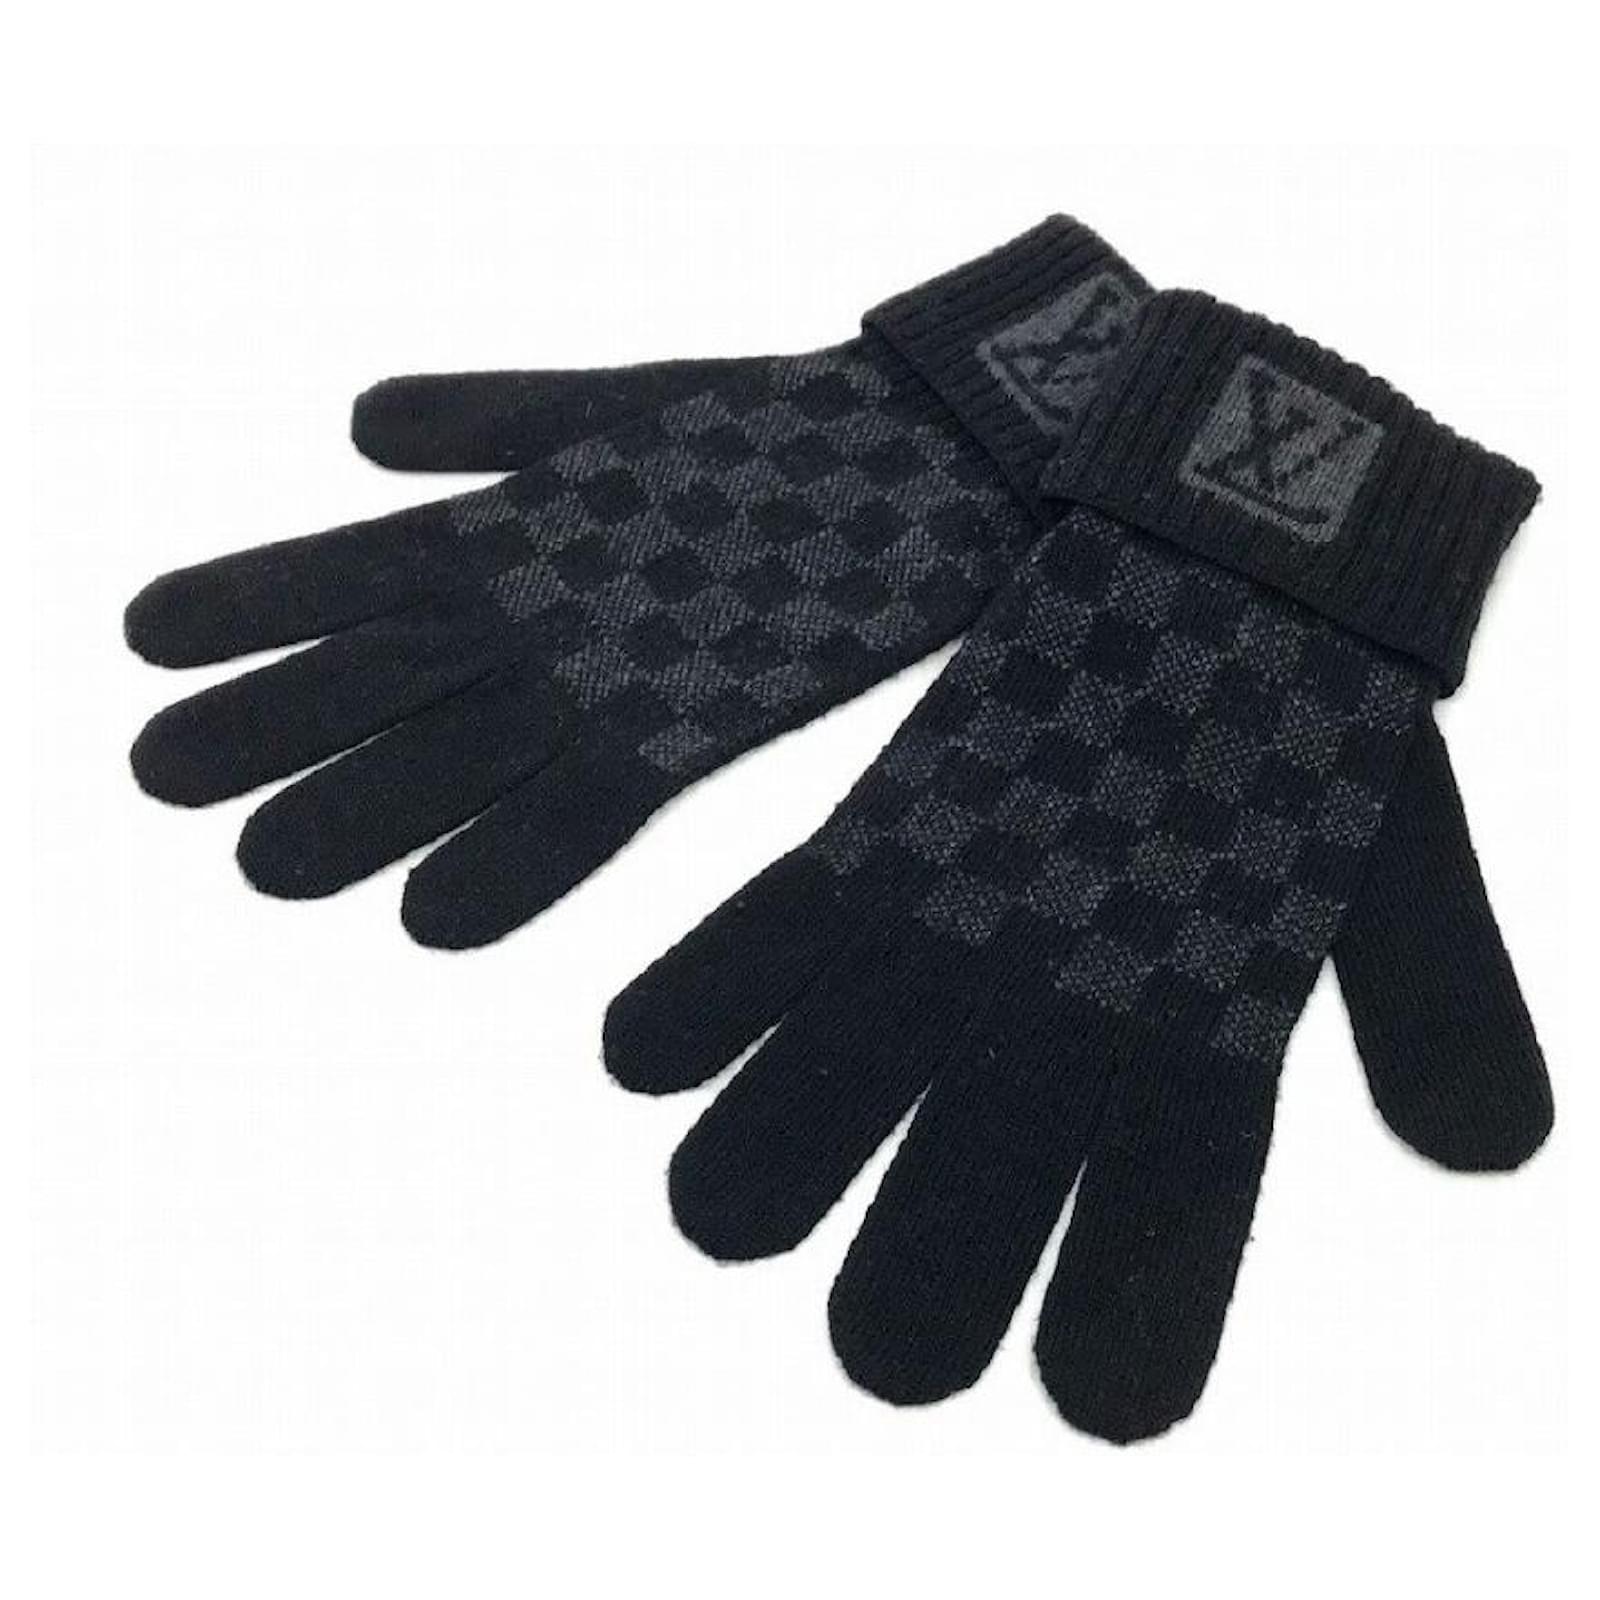 LOUIS VUITTON M58332 Gompty Damier Glove gloves wool Black